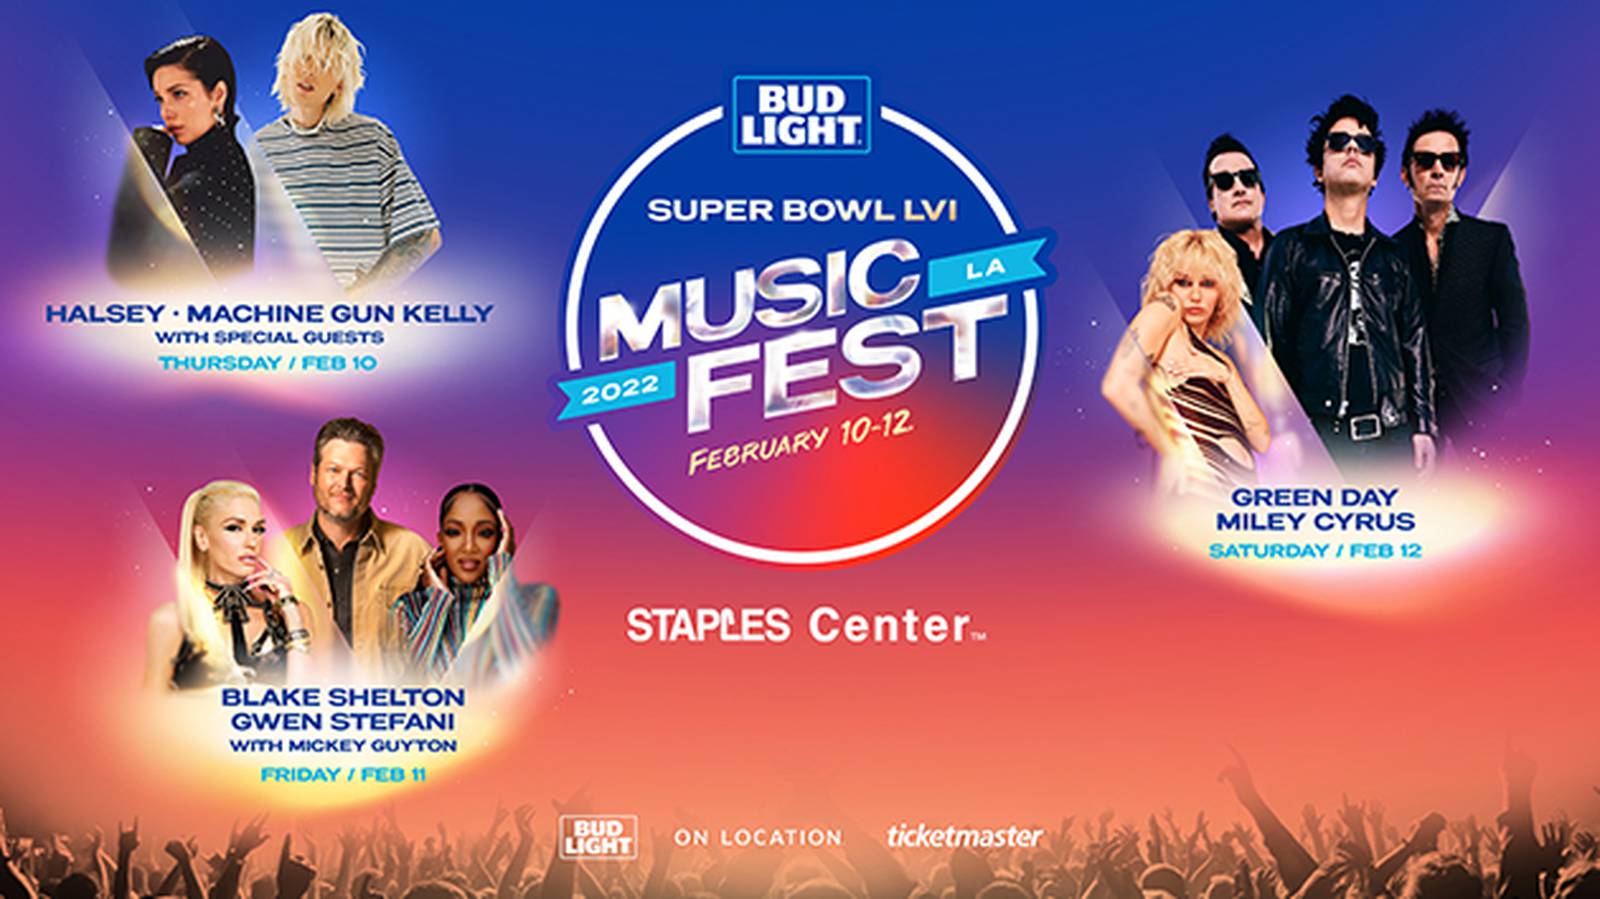 Bud Light Super Bowl Music Fest taps Halsey, Miley Cyrus, Gwen Stefani